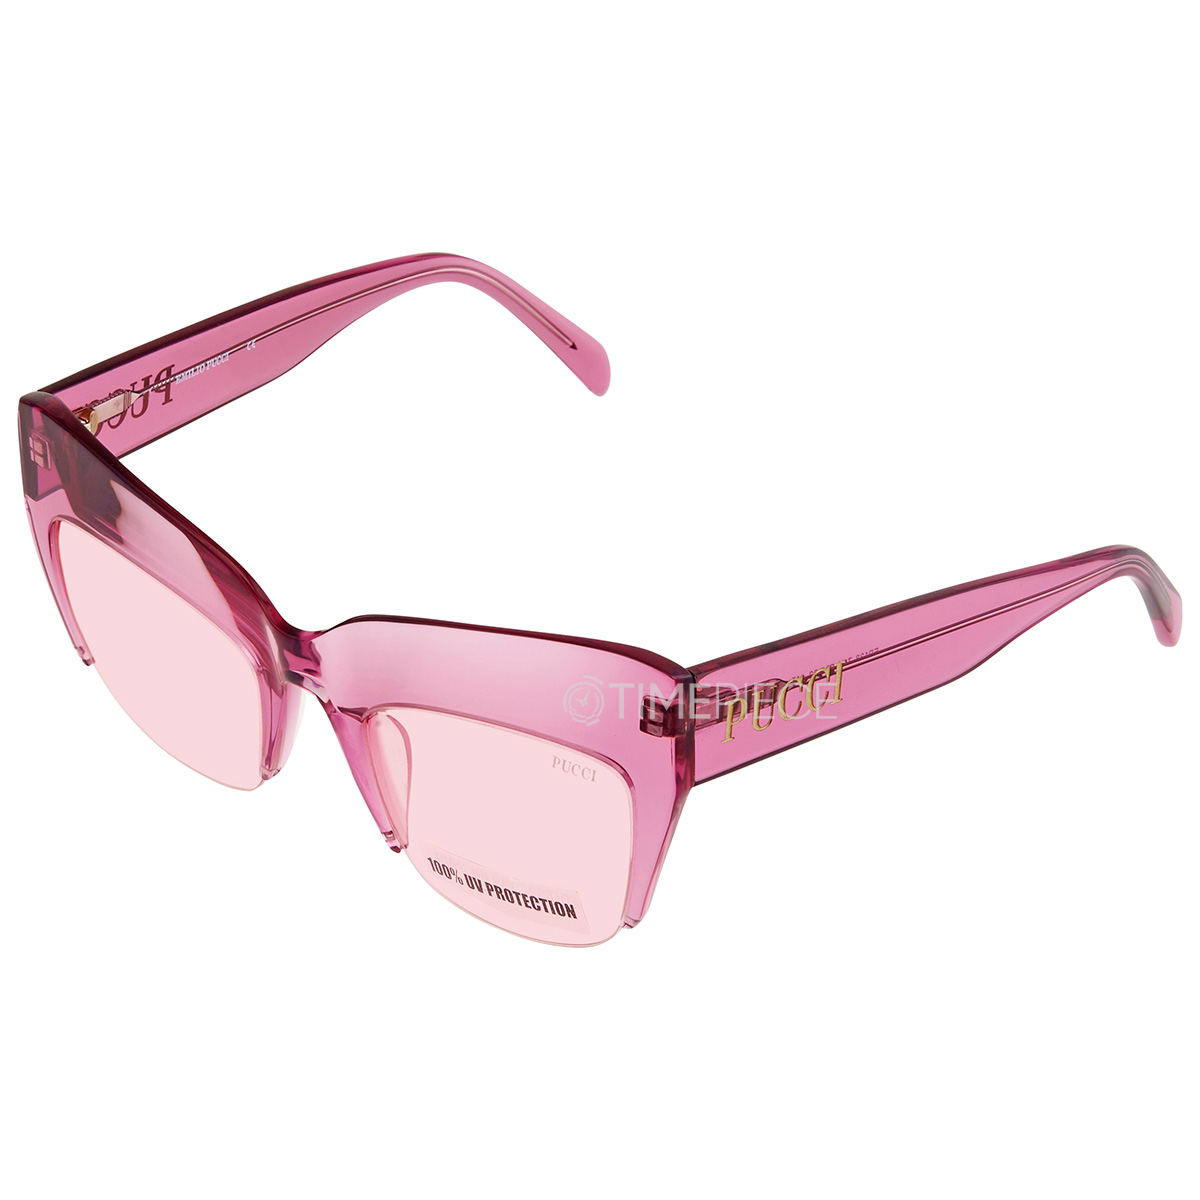 Emilio Pucci Authenticated Sunglasses